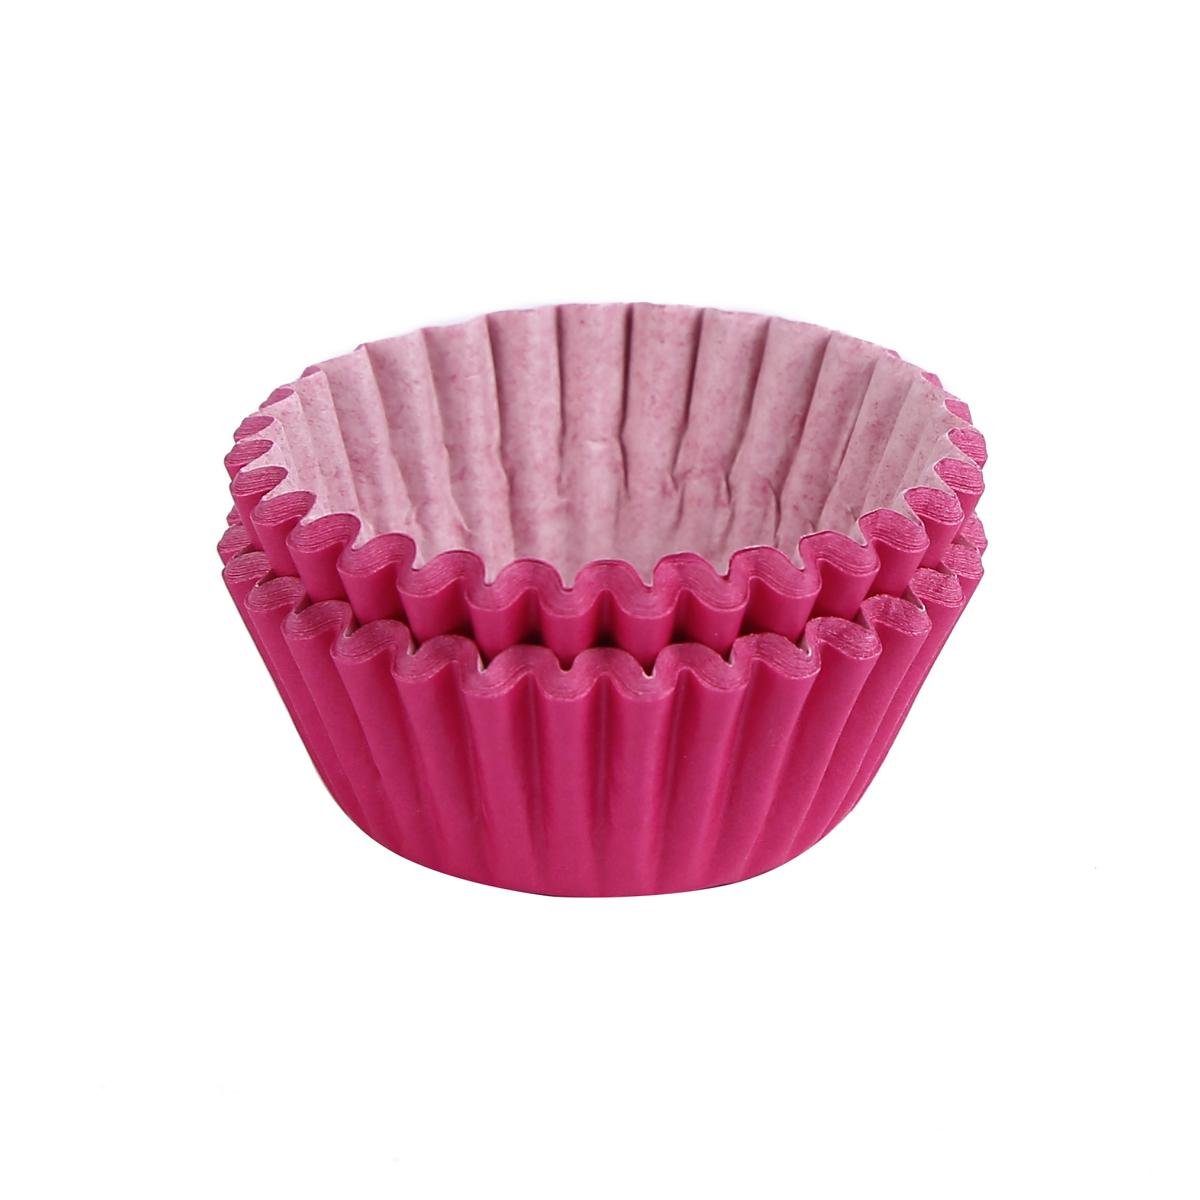 Miss Bakery's House Muffinform Mini Muffinförmchen, (Pink 200-tlg), kleine Papierbackförmchen für Mini-Cupcakes und Minimuffins